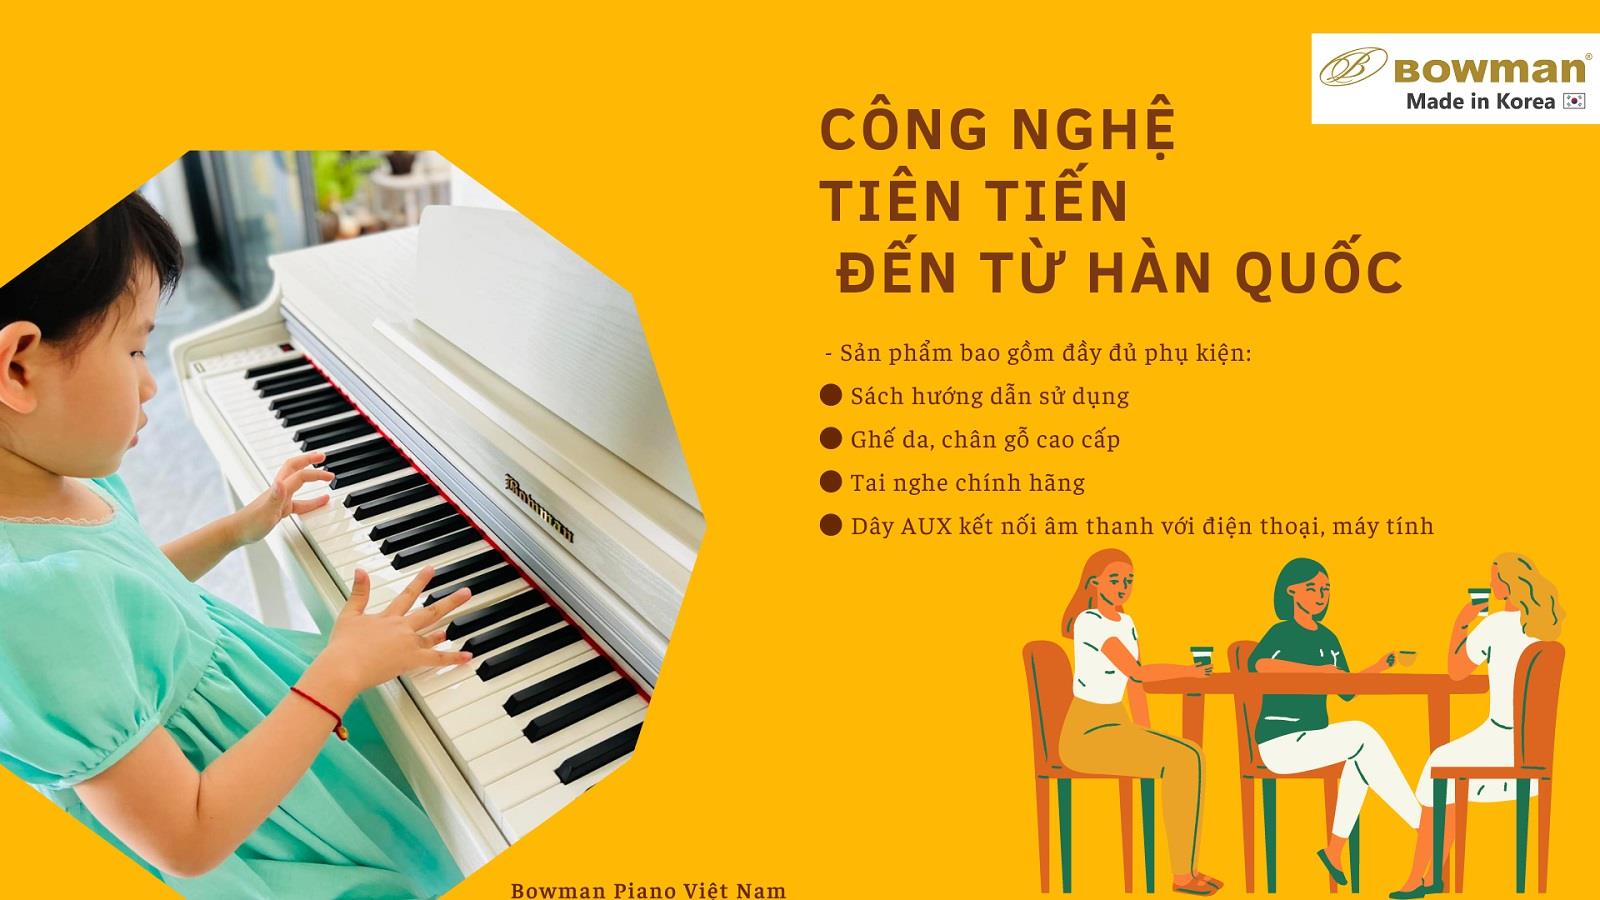 BOWMAN PIANO - CÔNG NGHỆ TIÊN TIẾN ĐẾN TỪ HÀN QUỐC